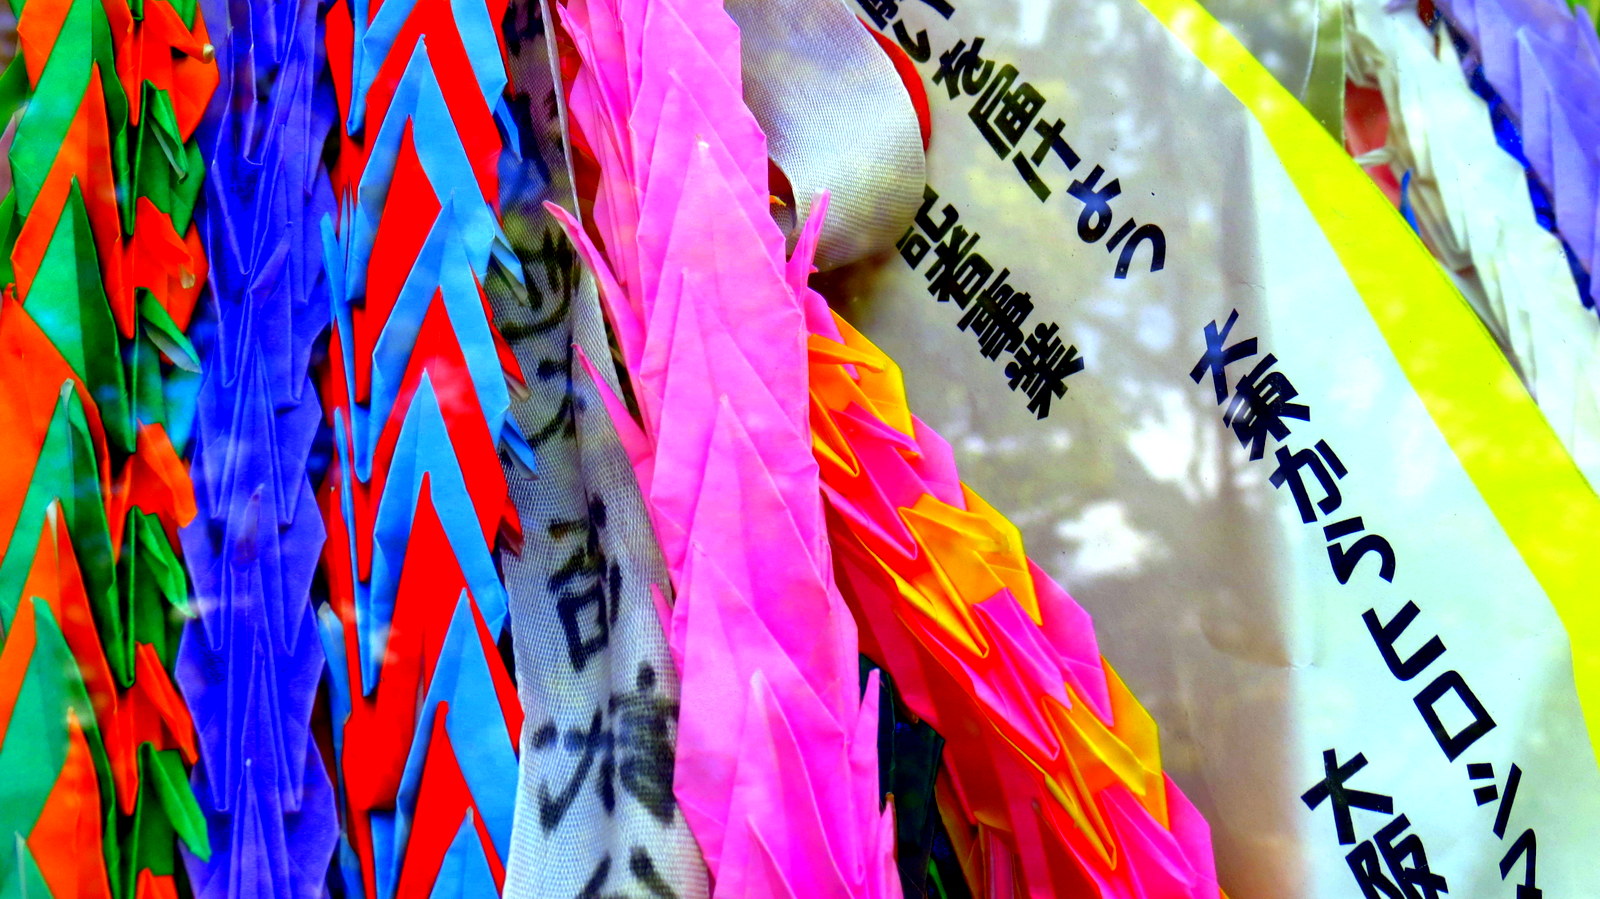 Paper cranes Hiroshima Peace park